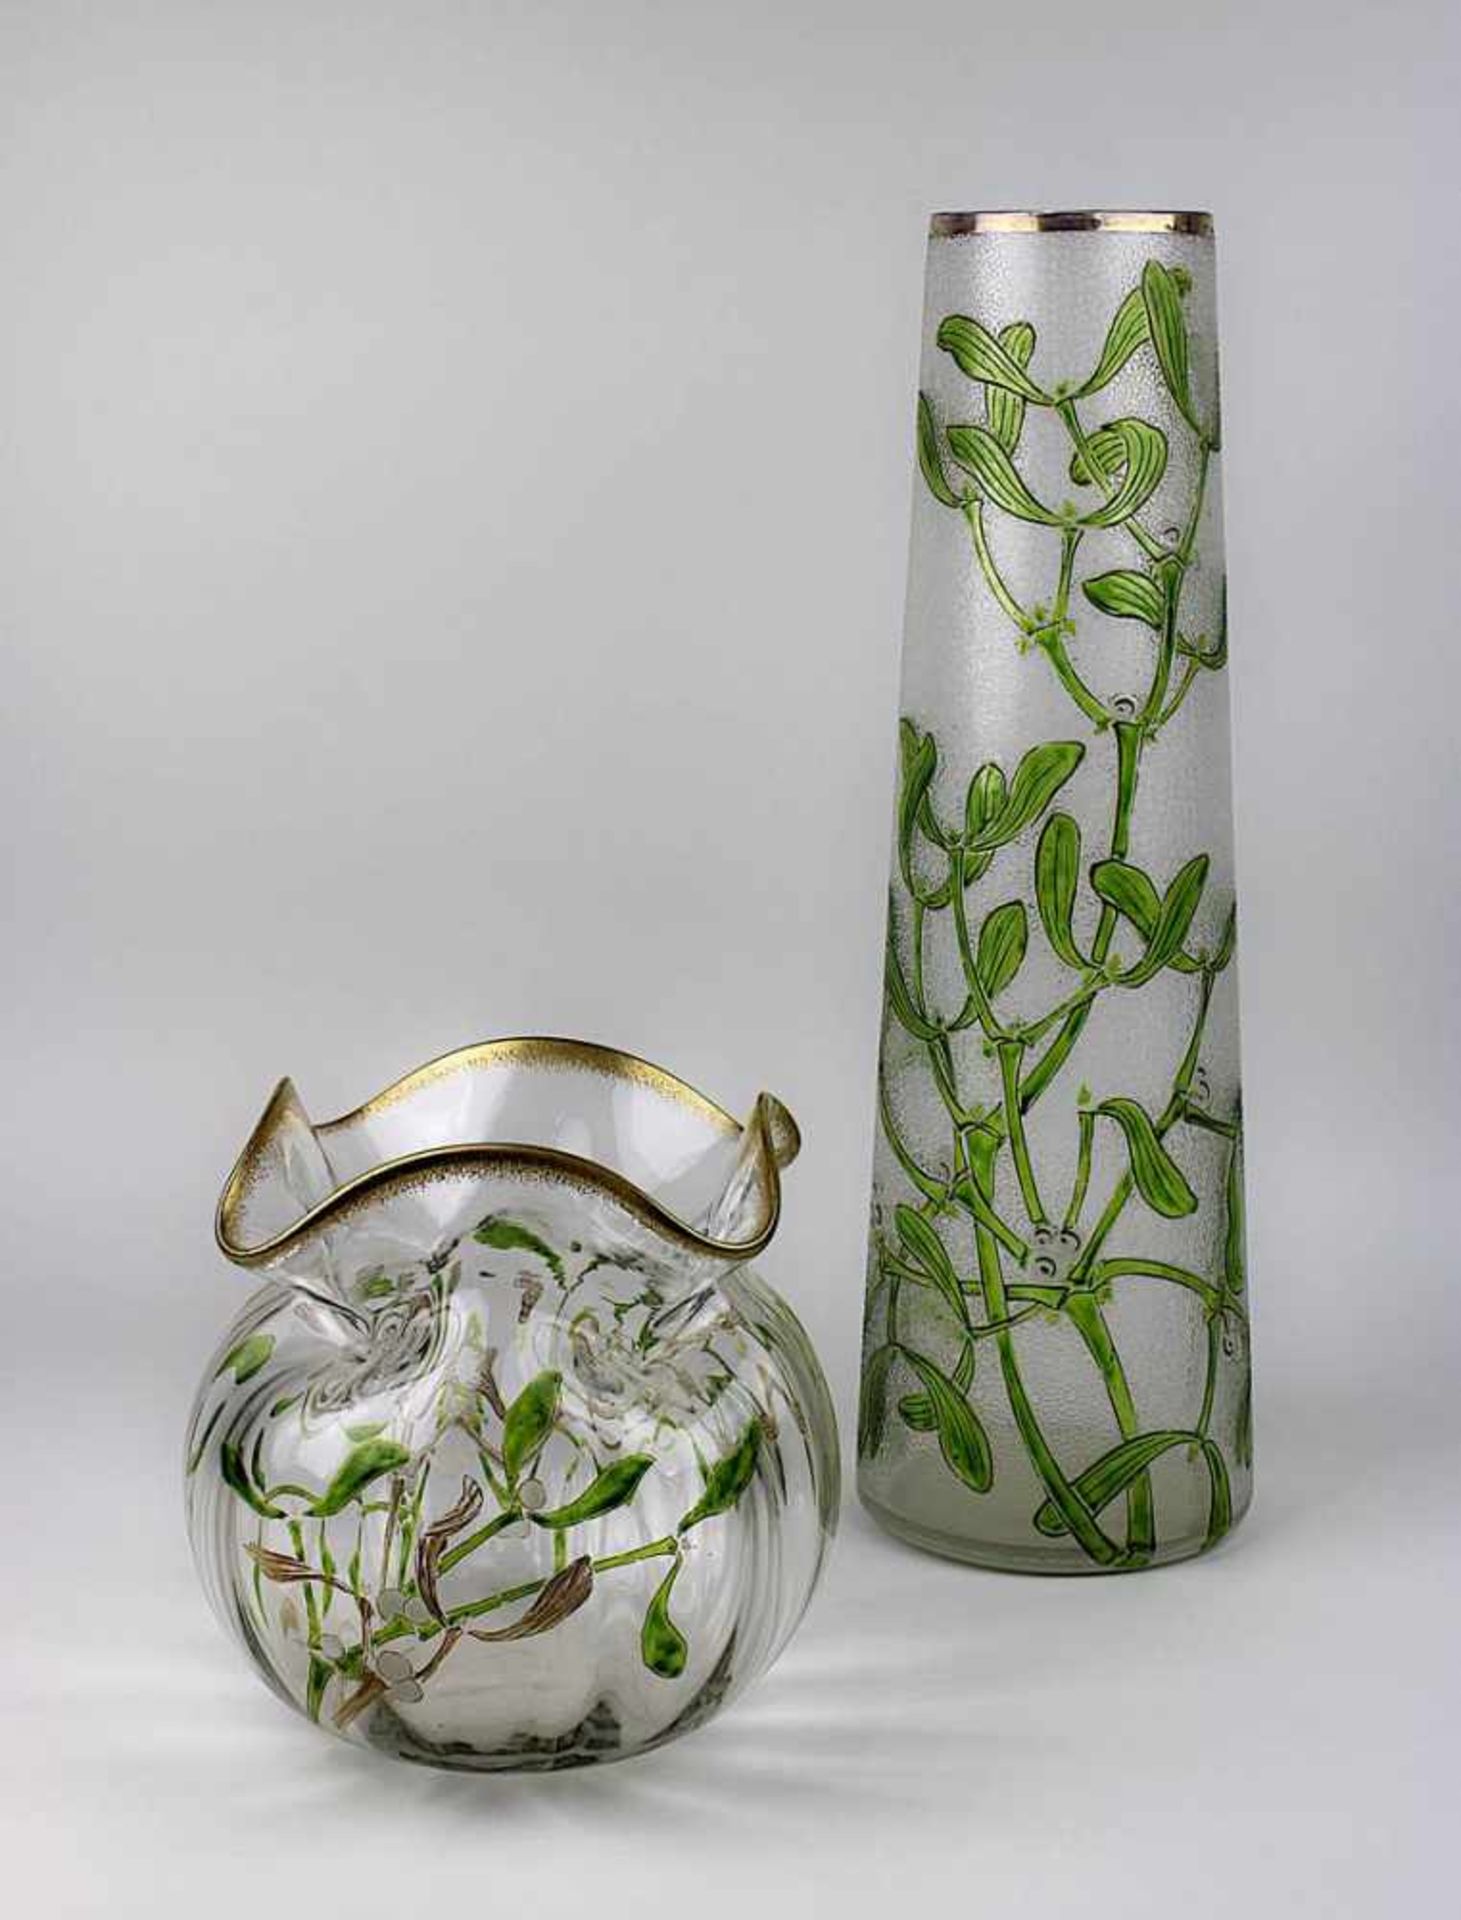 Zwei Jugendstilvasen mit Misteldekor, Frankreich um 1900, eine kugelförmige, mundgeblasene Vase